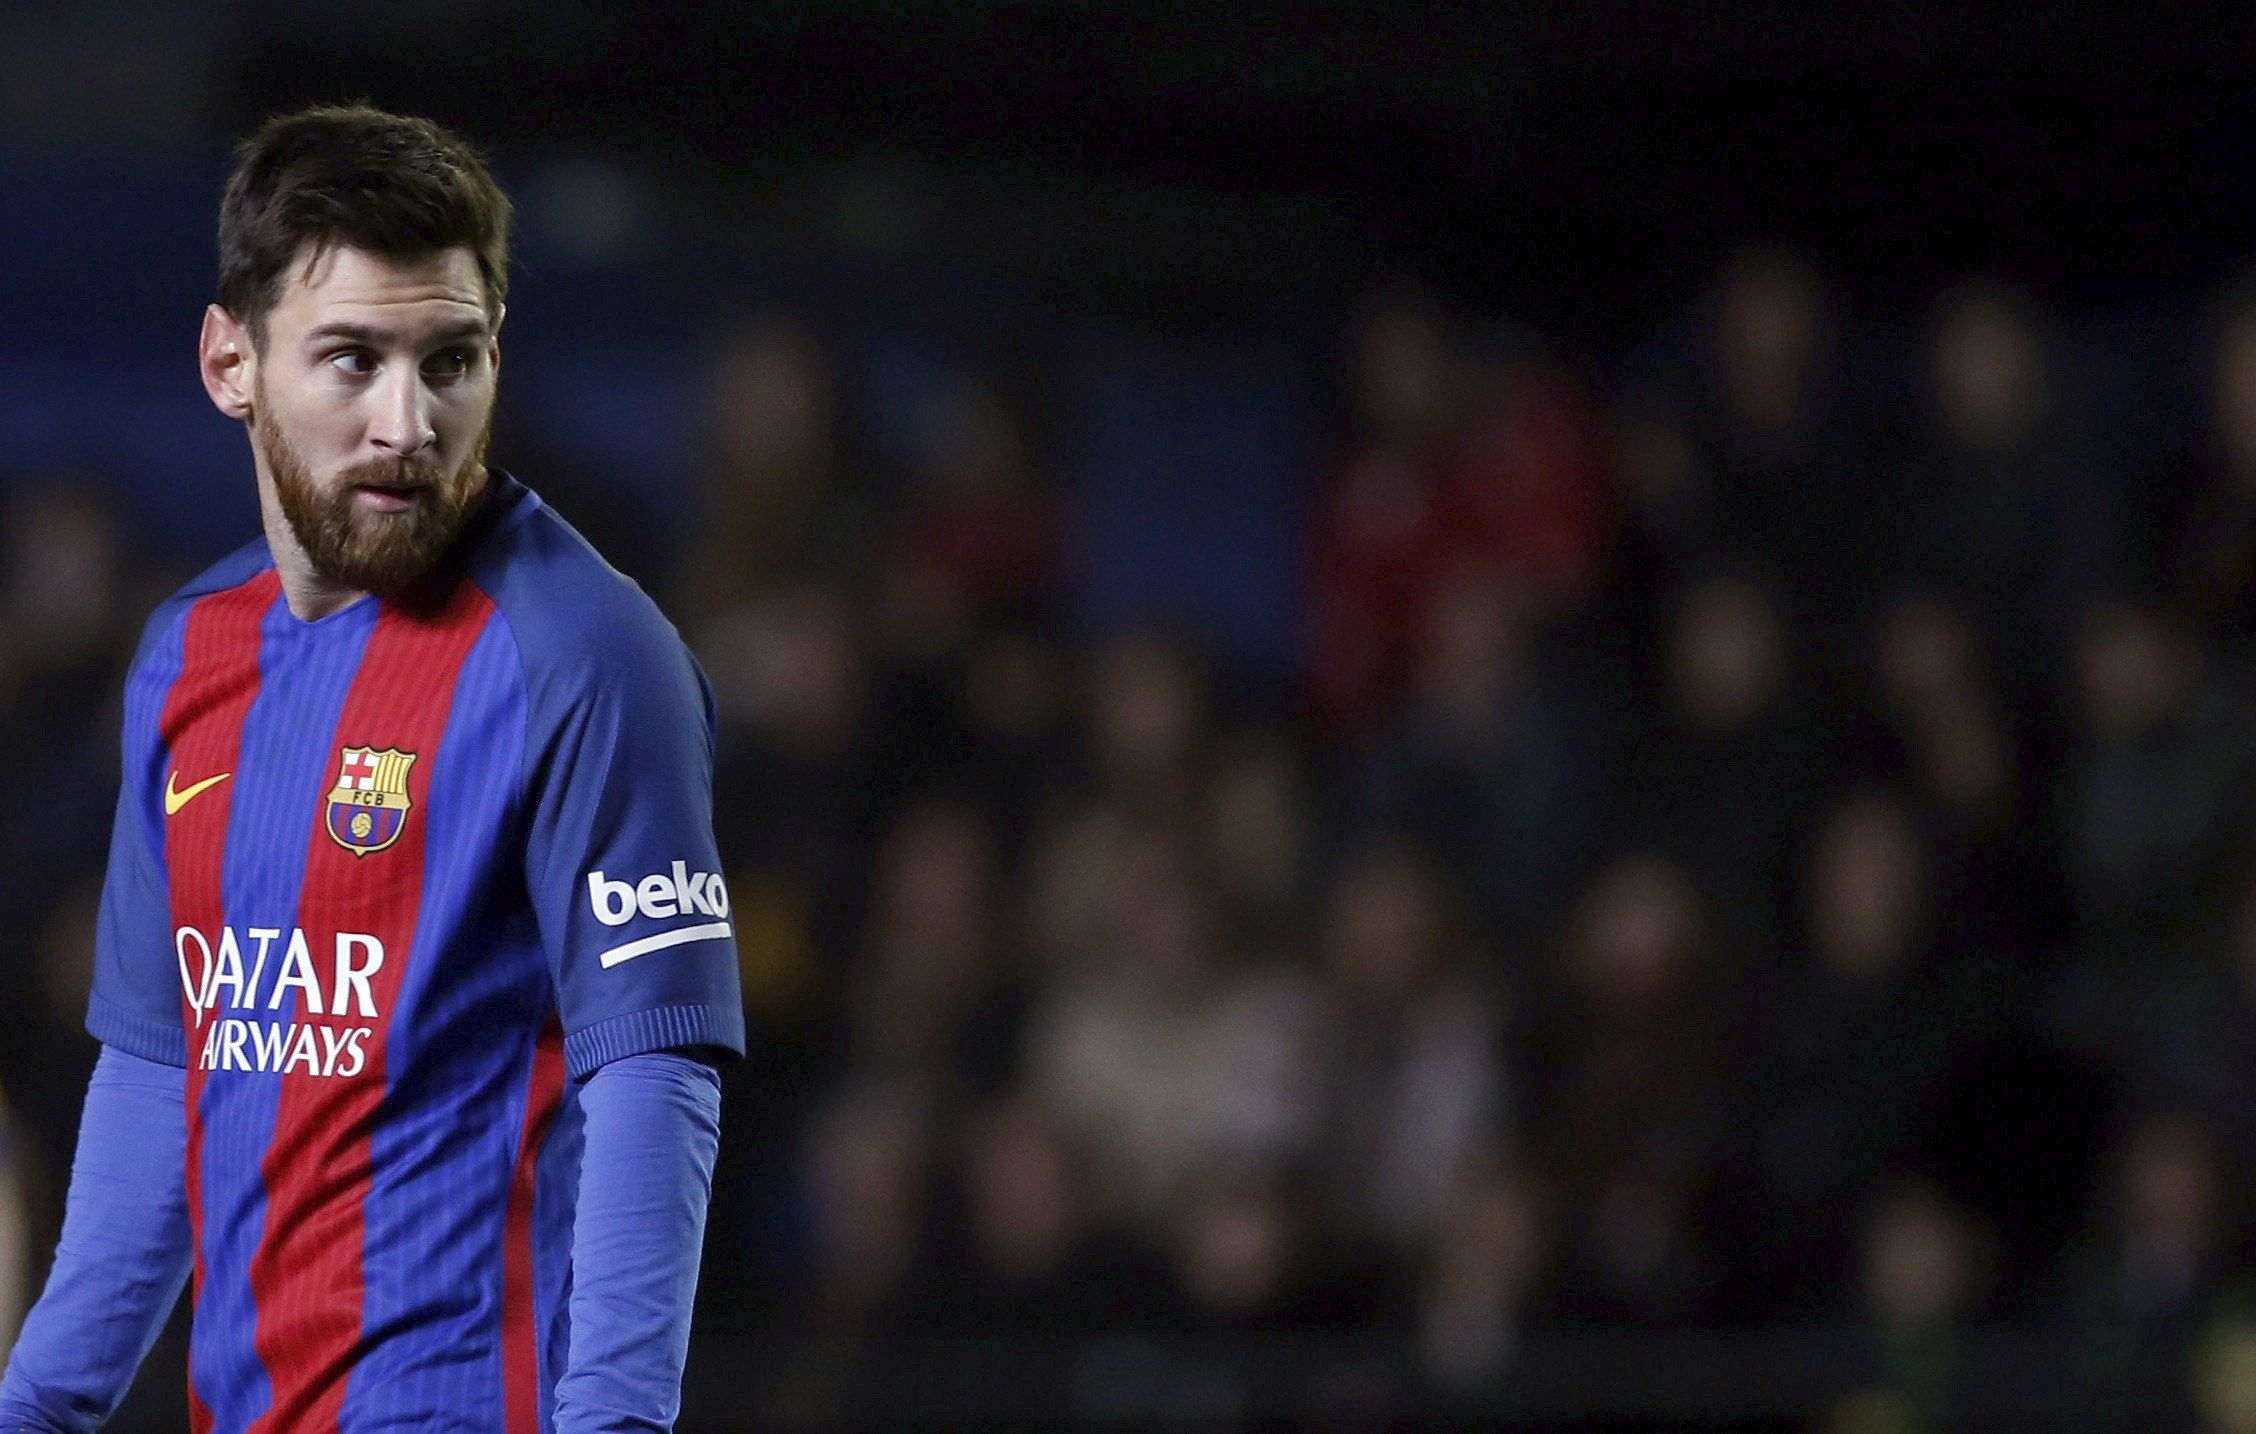 El Barça, sobre la renovación de Messi: "Cabeza fría y sentido común"